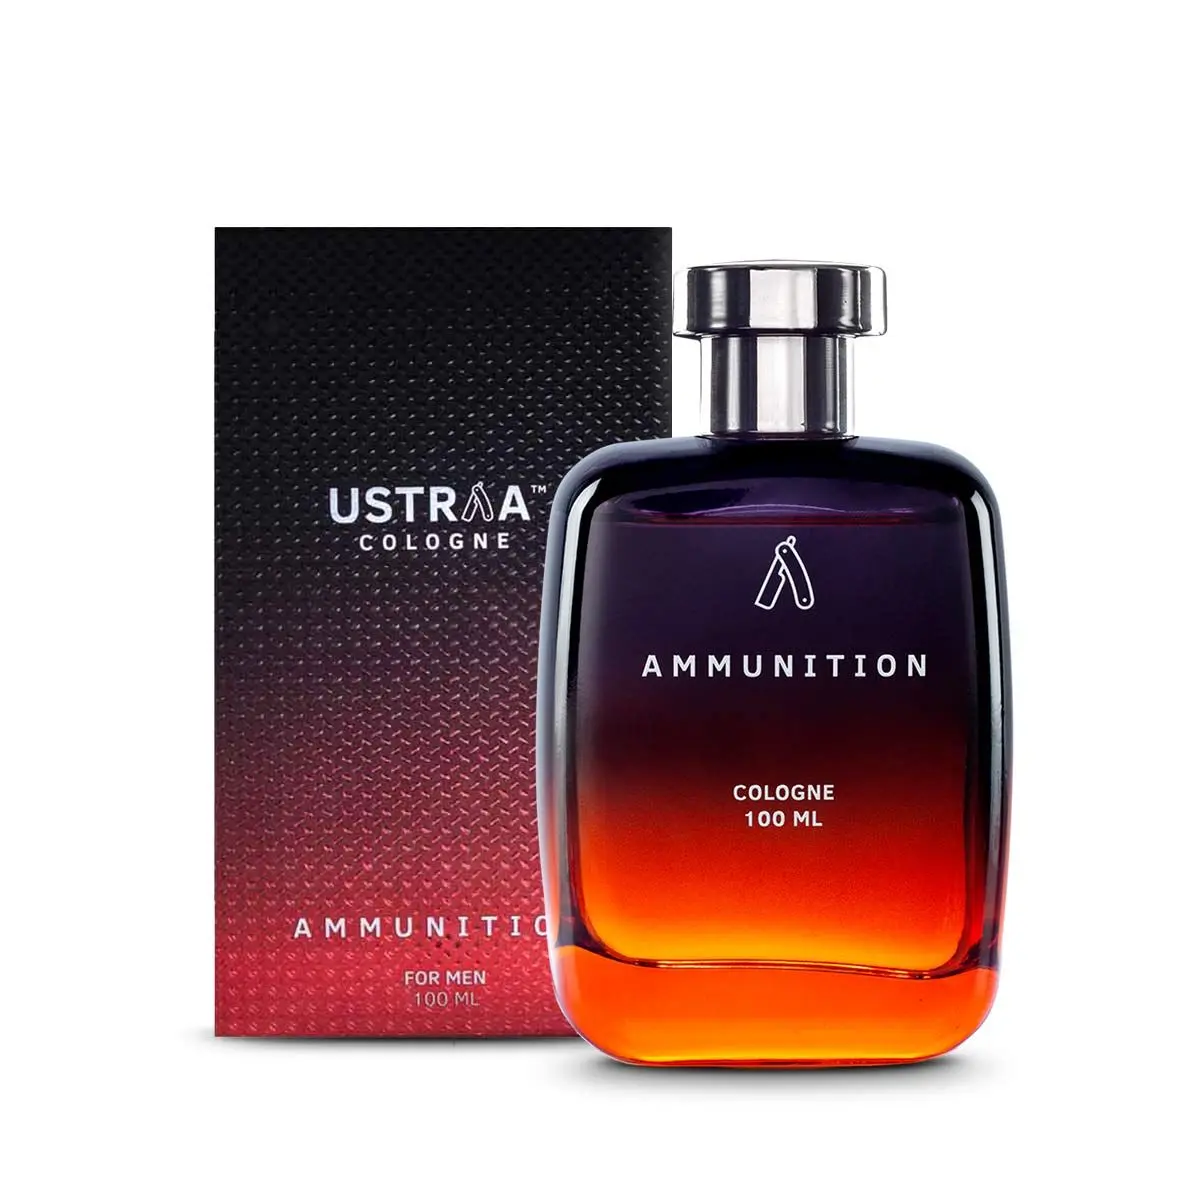 Ustraa Ammunition Cologne - 100 ml - Perfume for Men